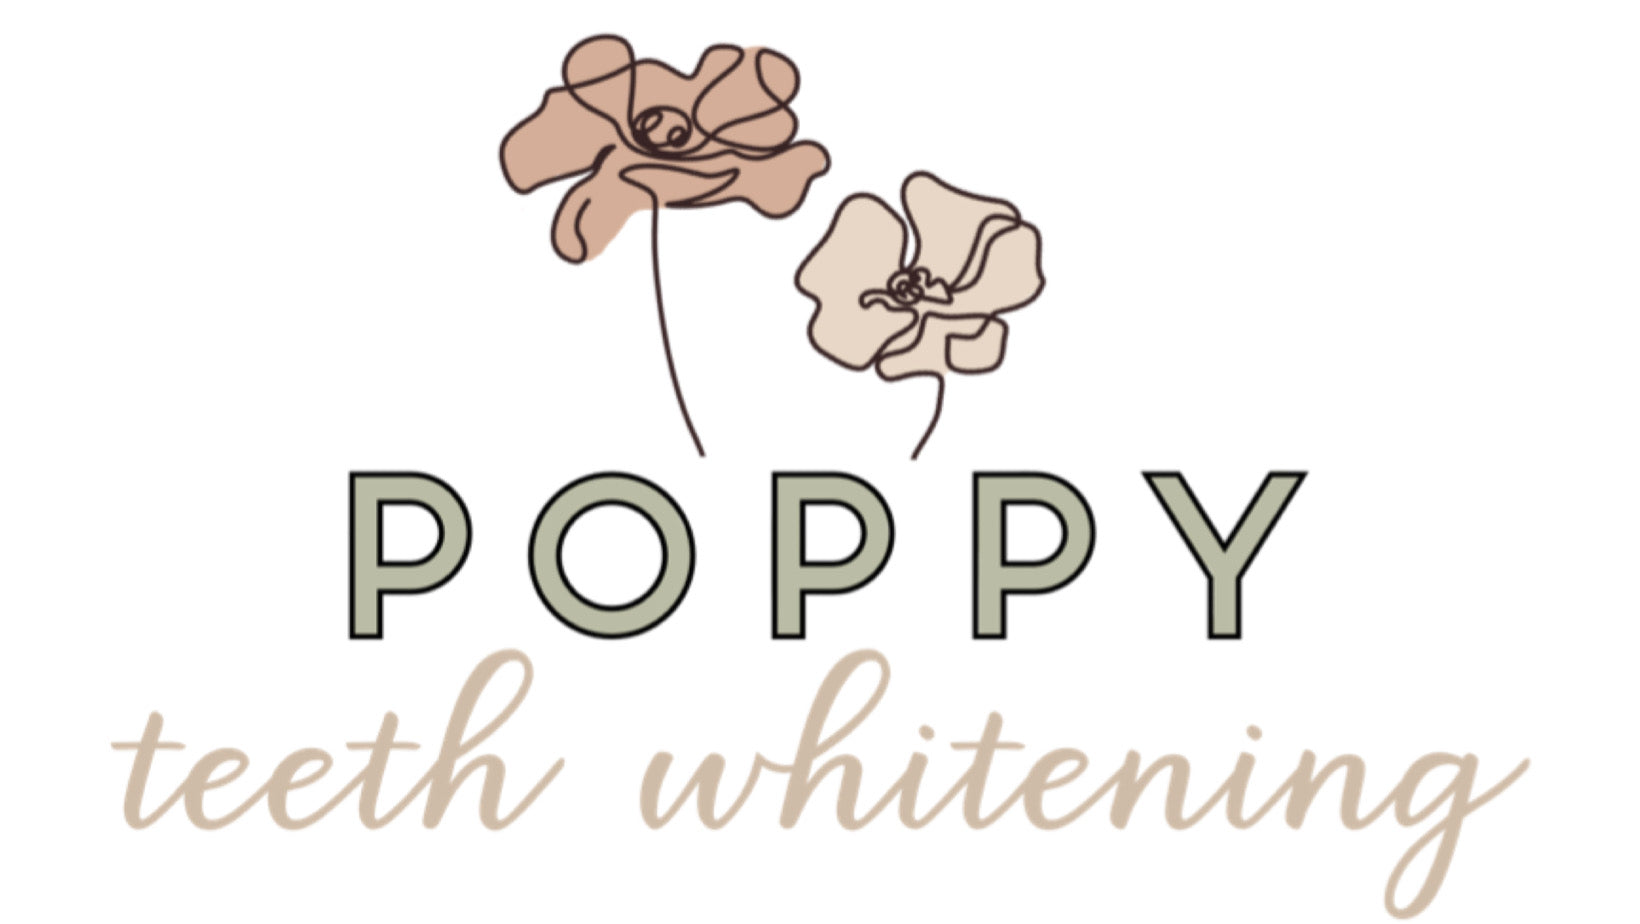 POPPY TEETH WHITENING